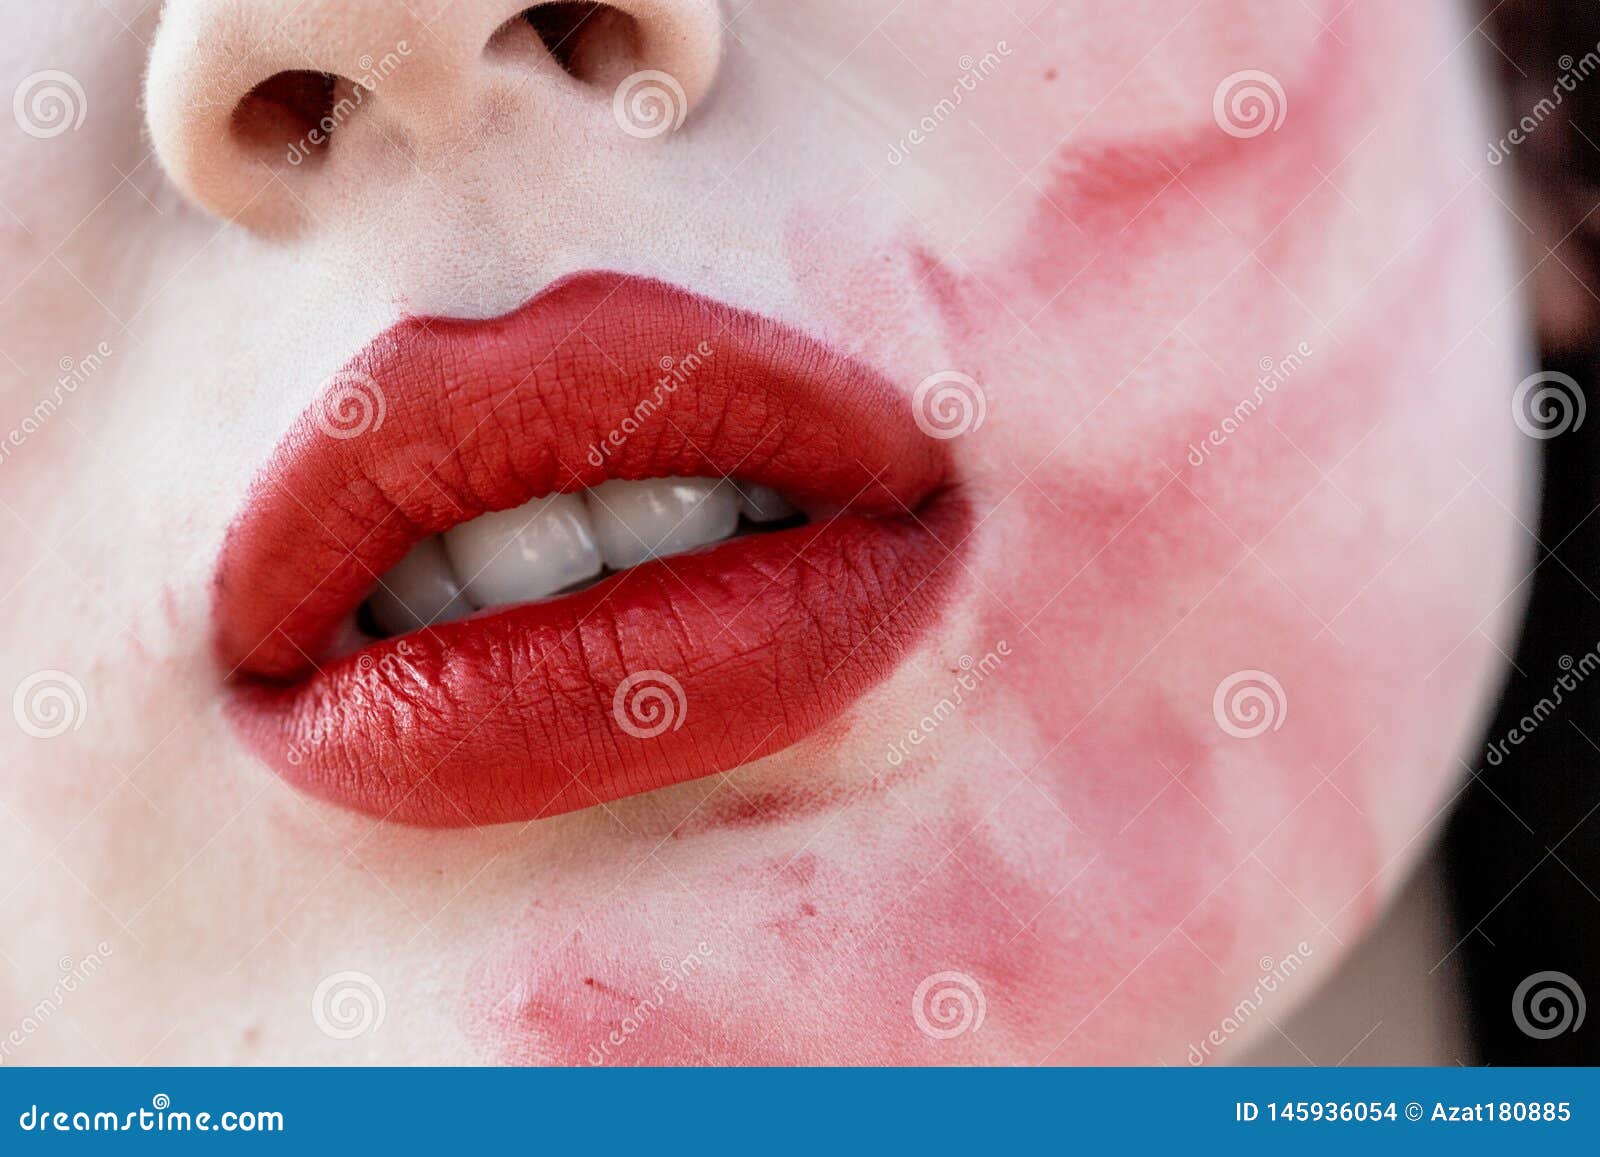 Текст губы в помаде размазаны. Девушка с размазанной помадой.